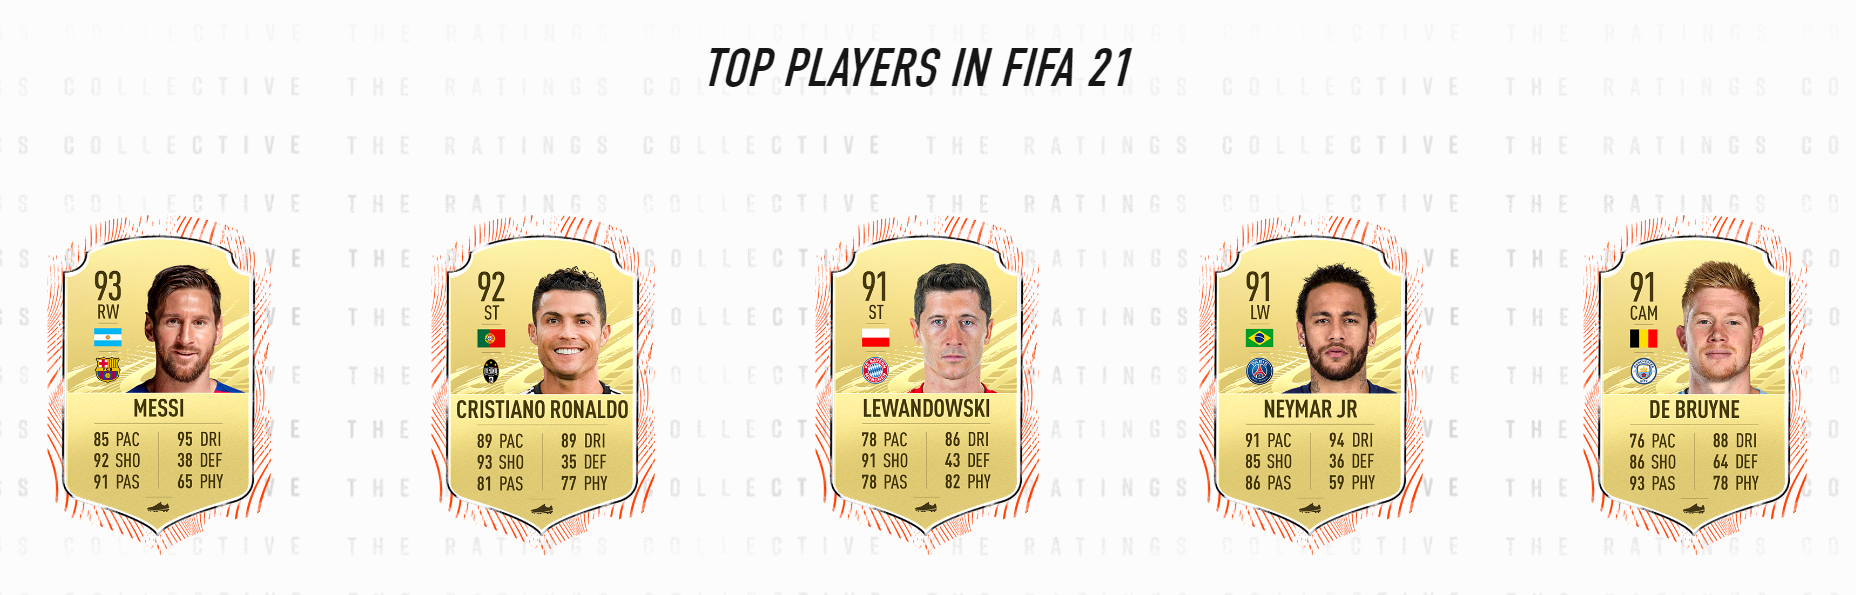 Topp 5 spelare i FIFA 21